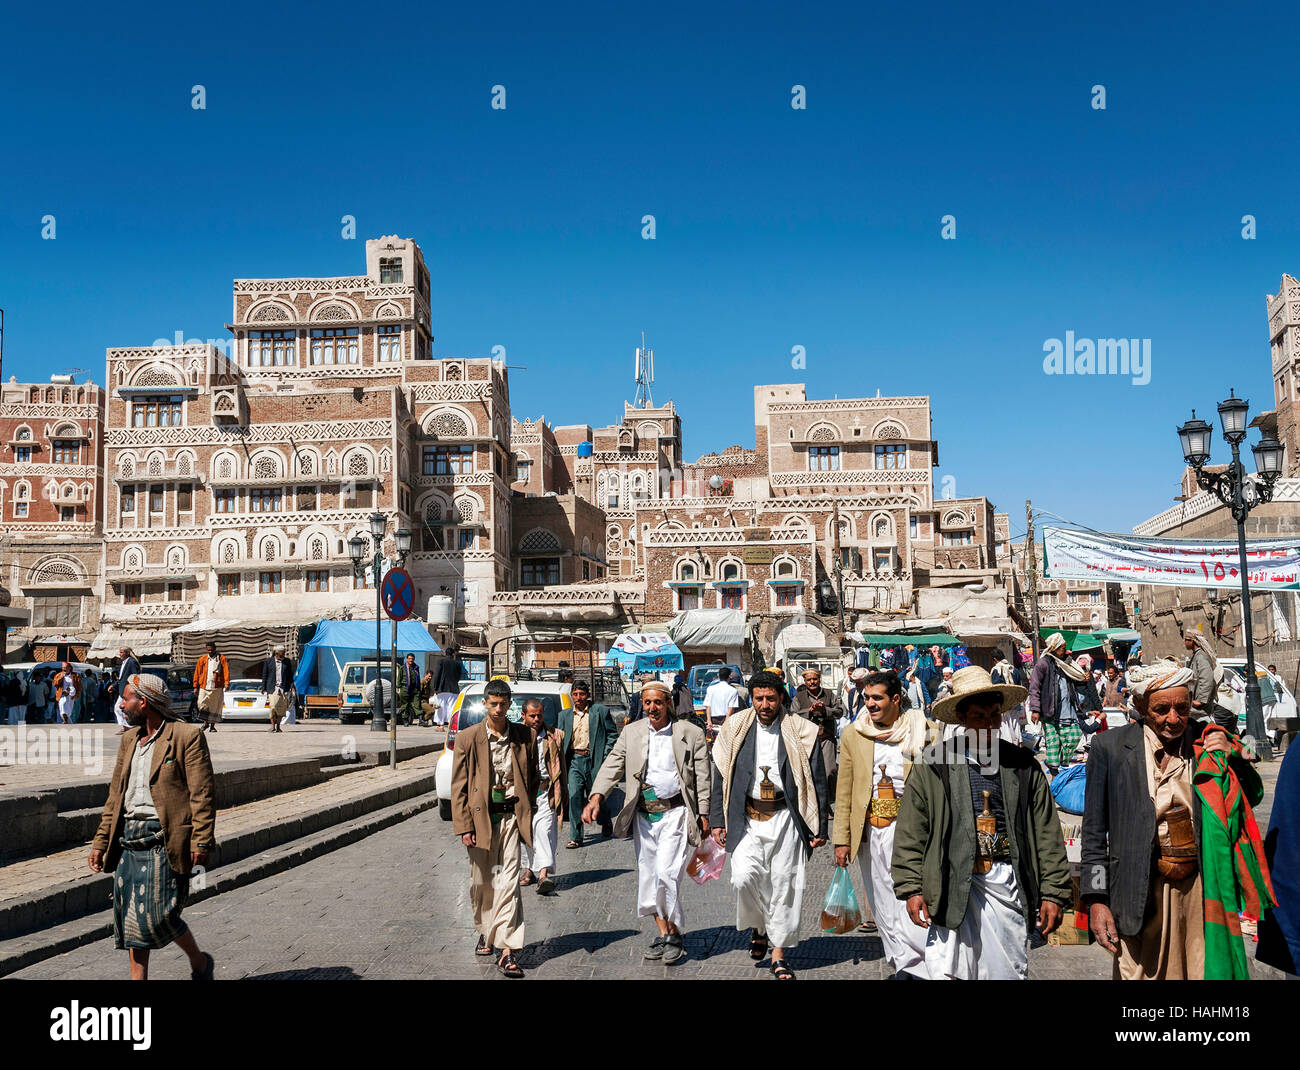 Centrale di sanaa sana'una città vecchia strada da piazza del mercato landmark in Yemen Foto Stock